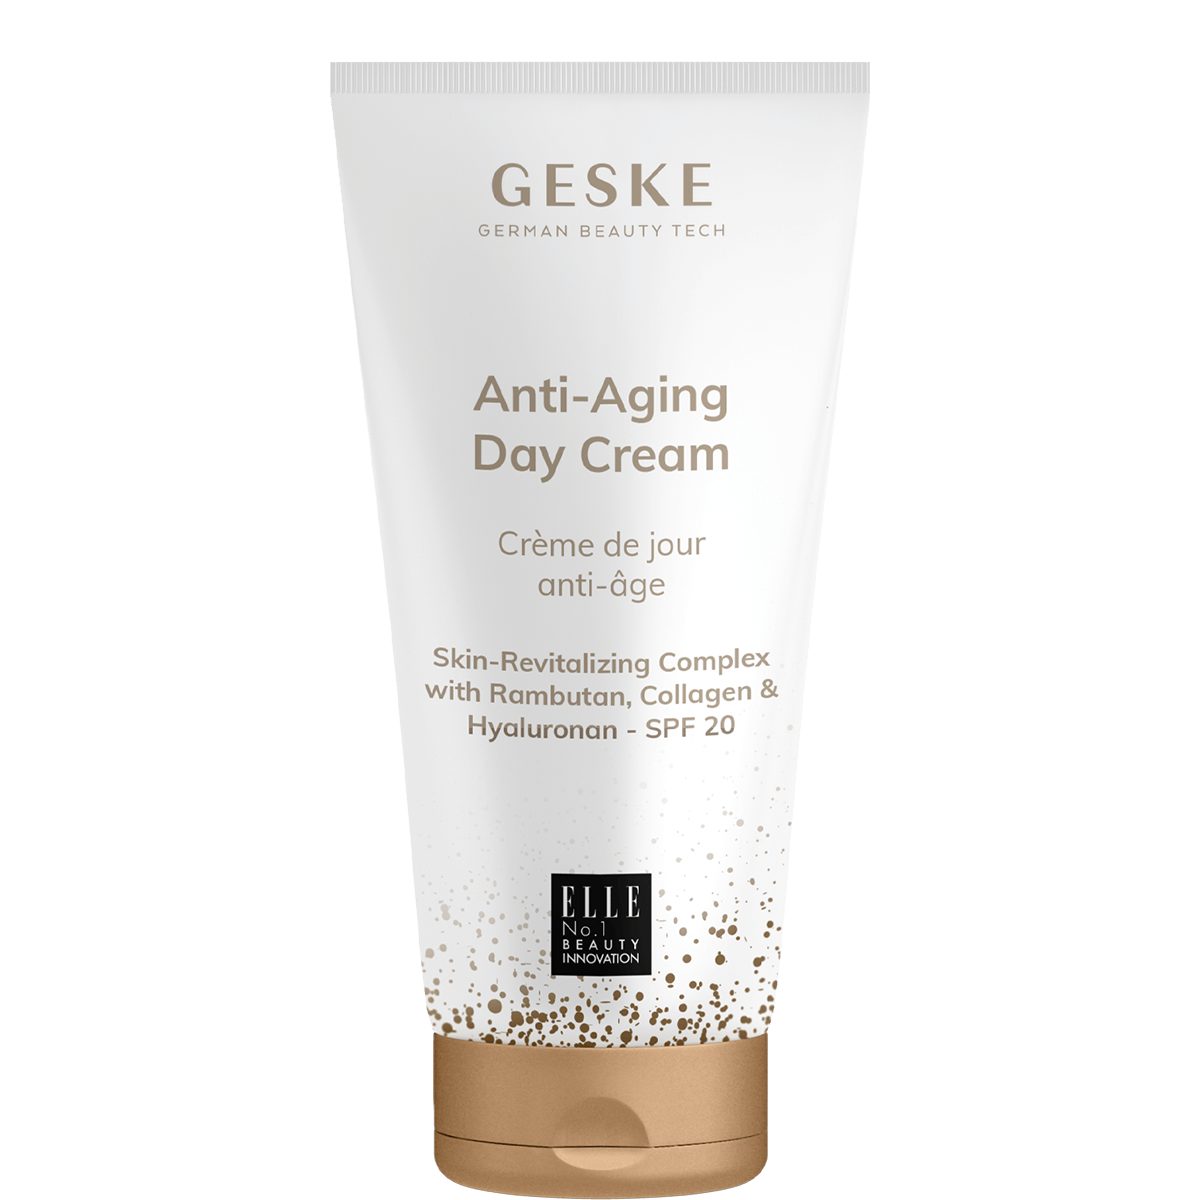 1-tlg. GESKE Tech Anti-Aging German Cream, Beauty Day Gesichtsöl